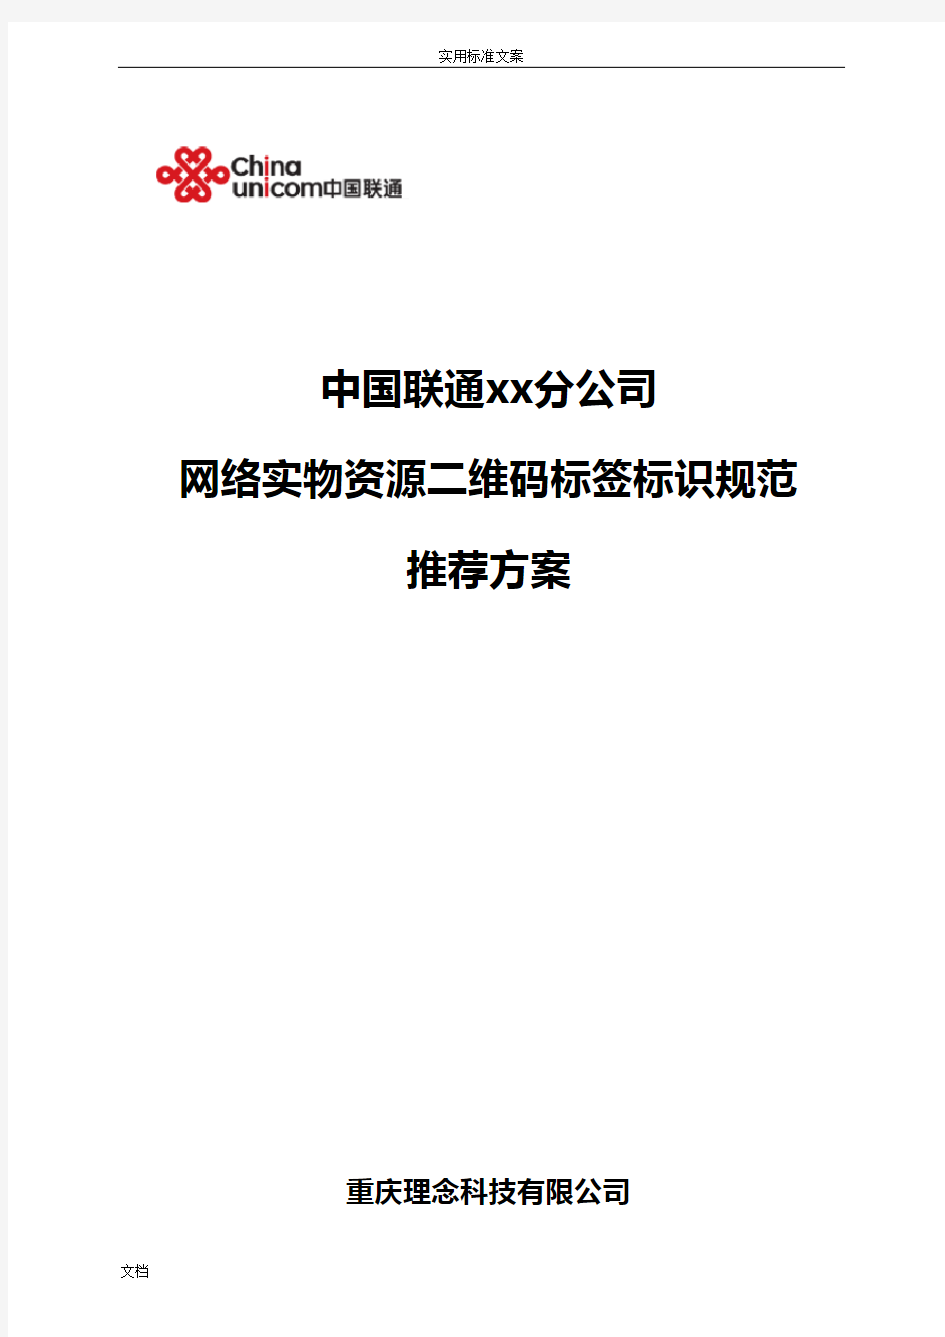 中国联通光缆资源二维码标签标识要求规范V6